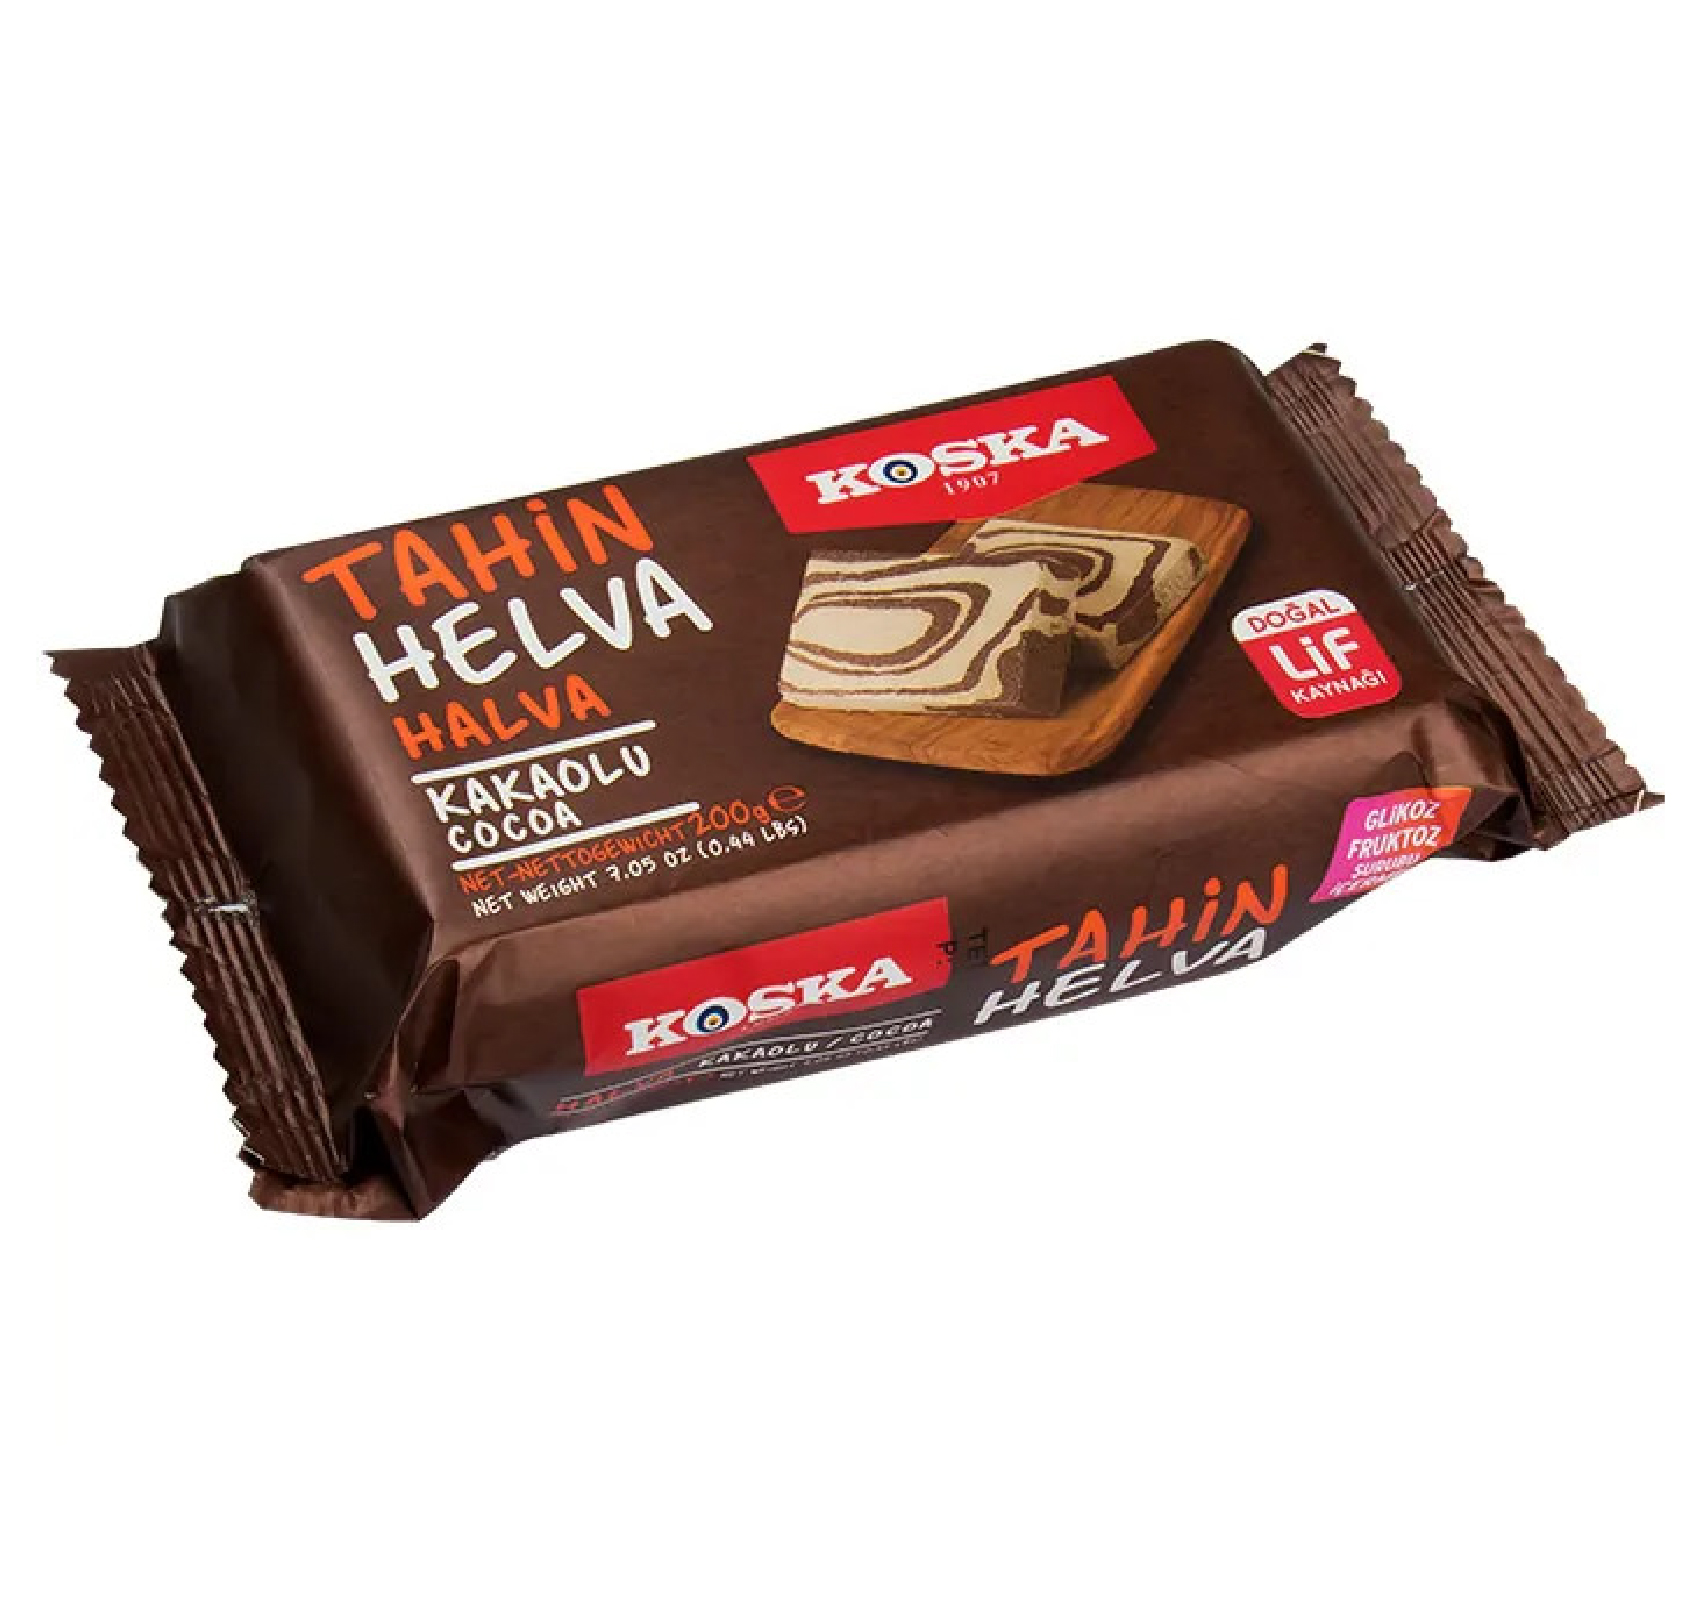 KOSKA Halva With Cocoa 200g x 12